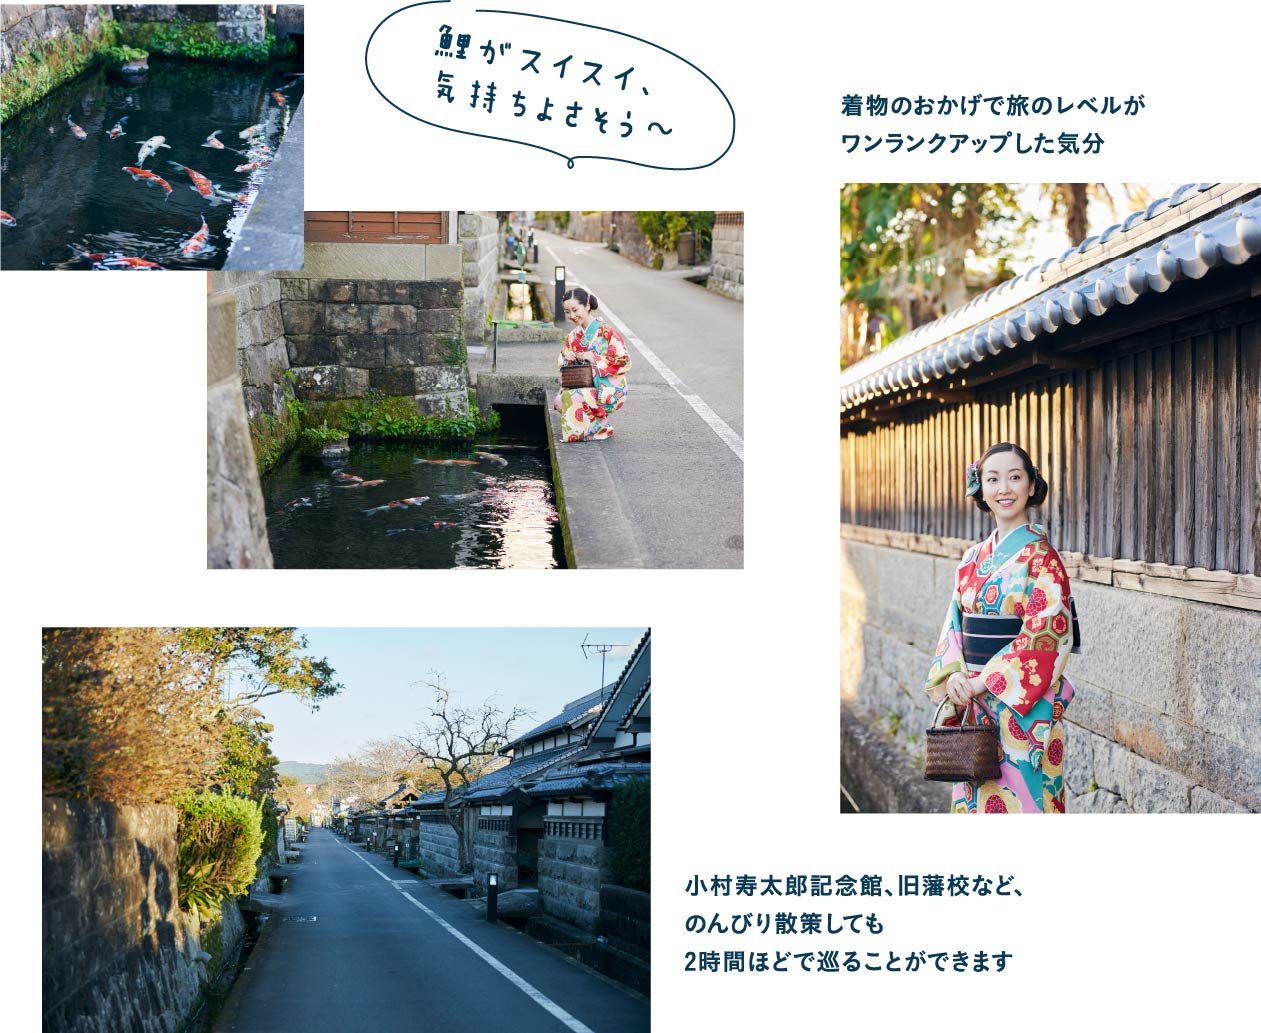 あゆみちゃんマップを片手に九州の小京都・飫肥城下町へ